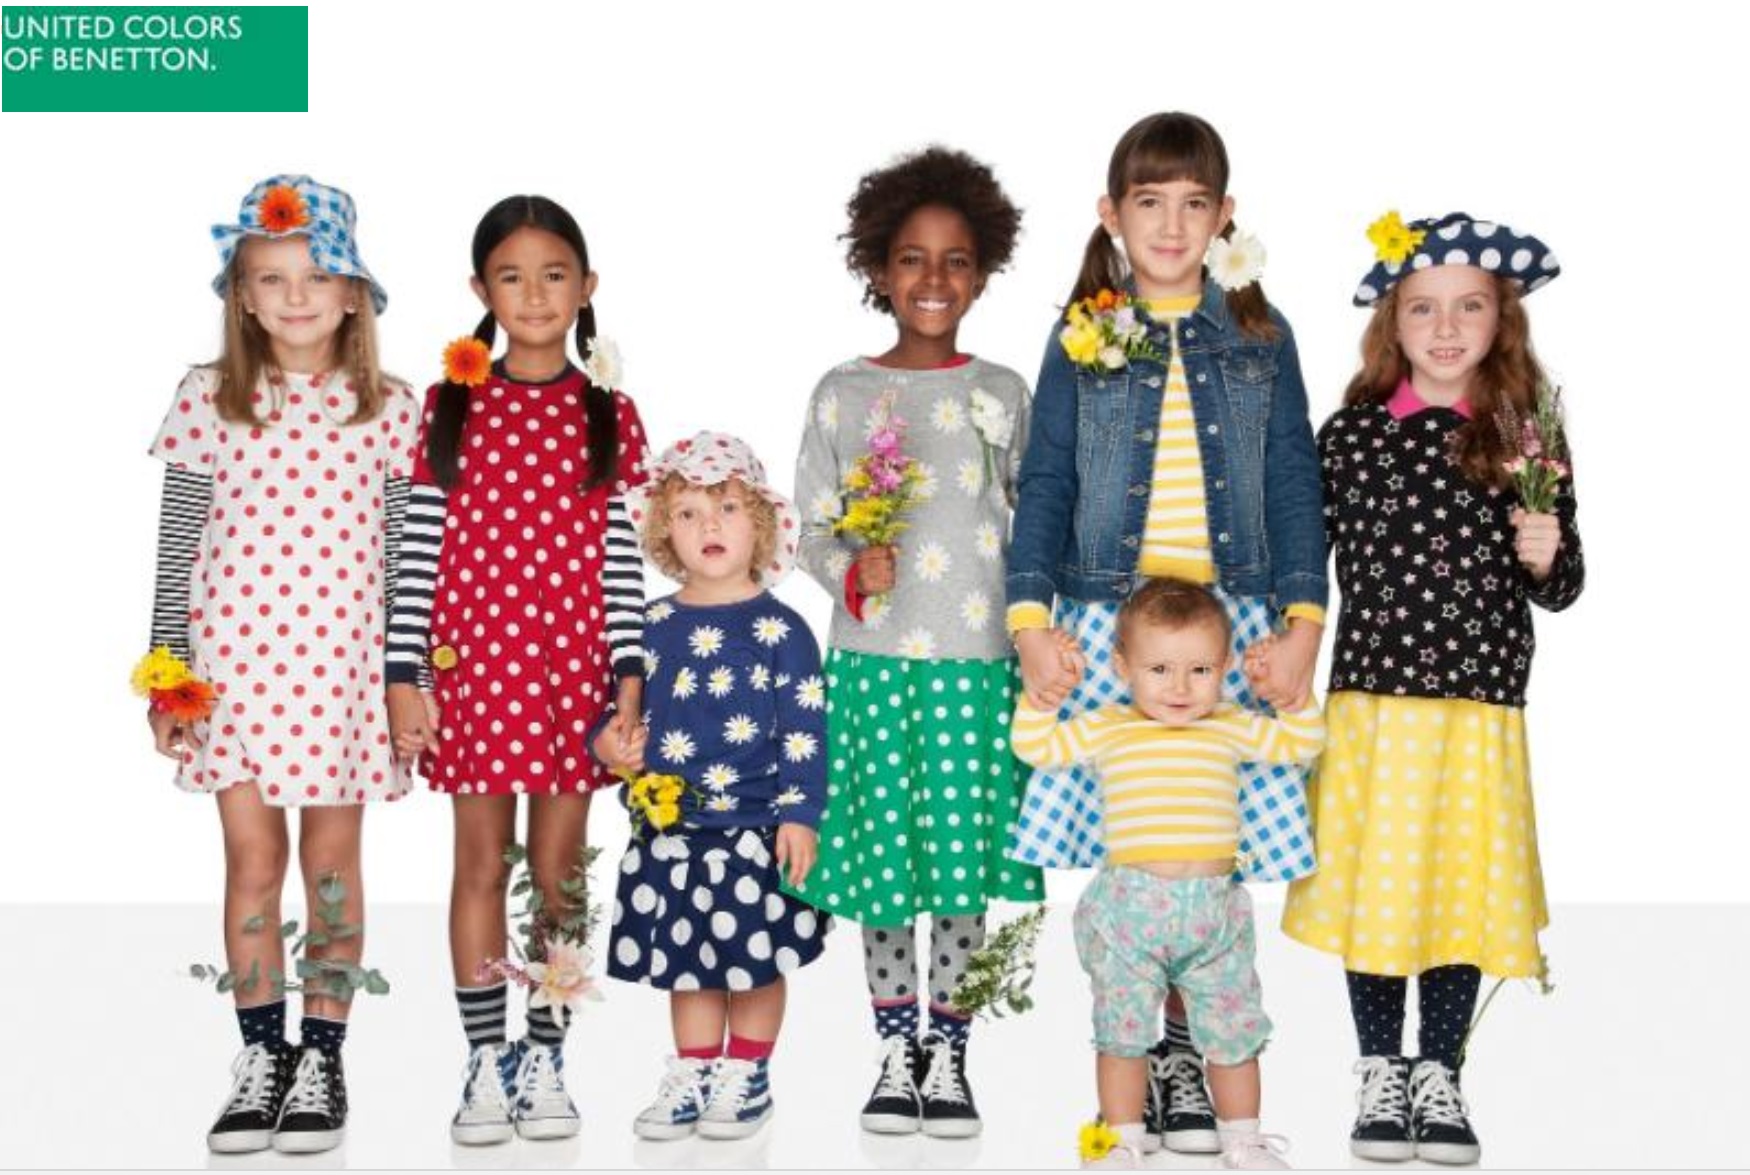 No seáis buenos'. Las Niñas y Niños Benetton de Oliviero Toscani - El Programa Publicidad